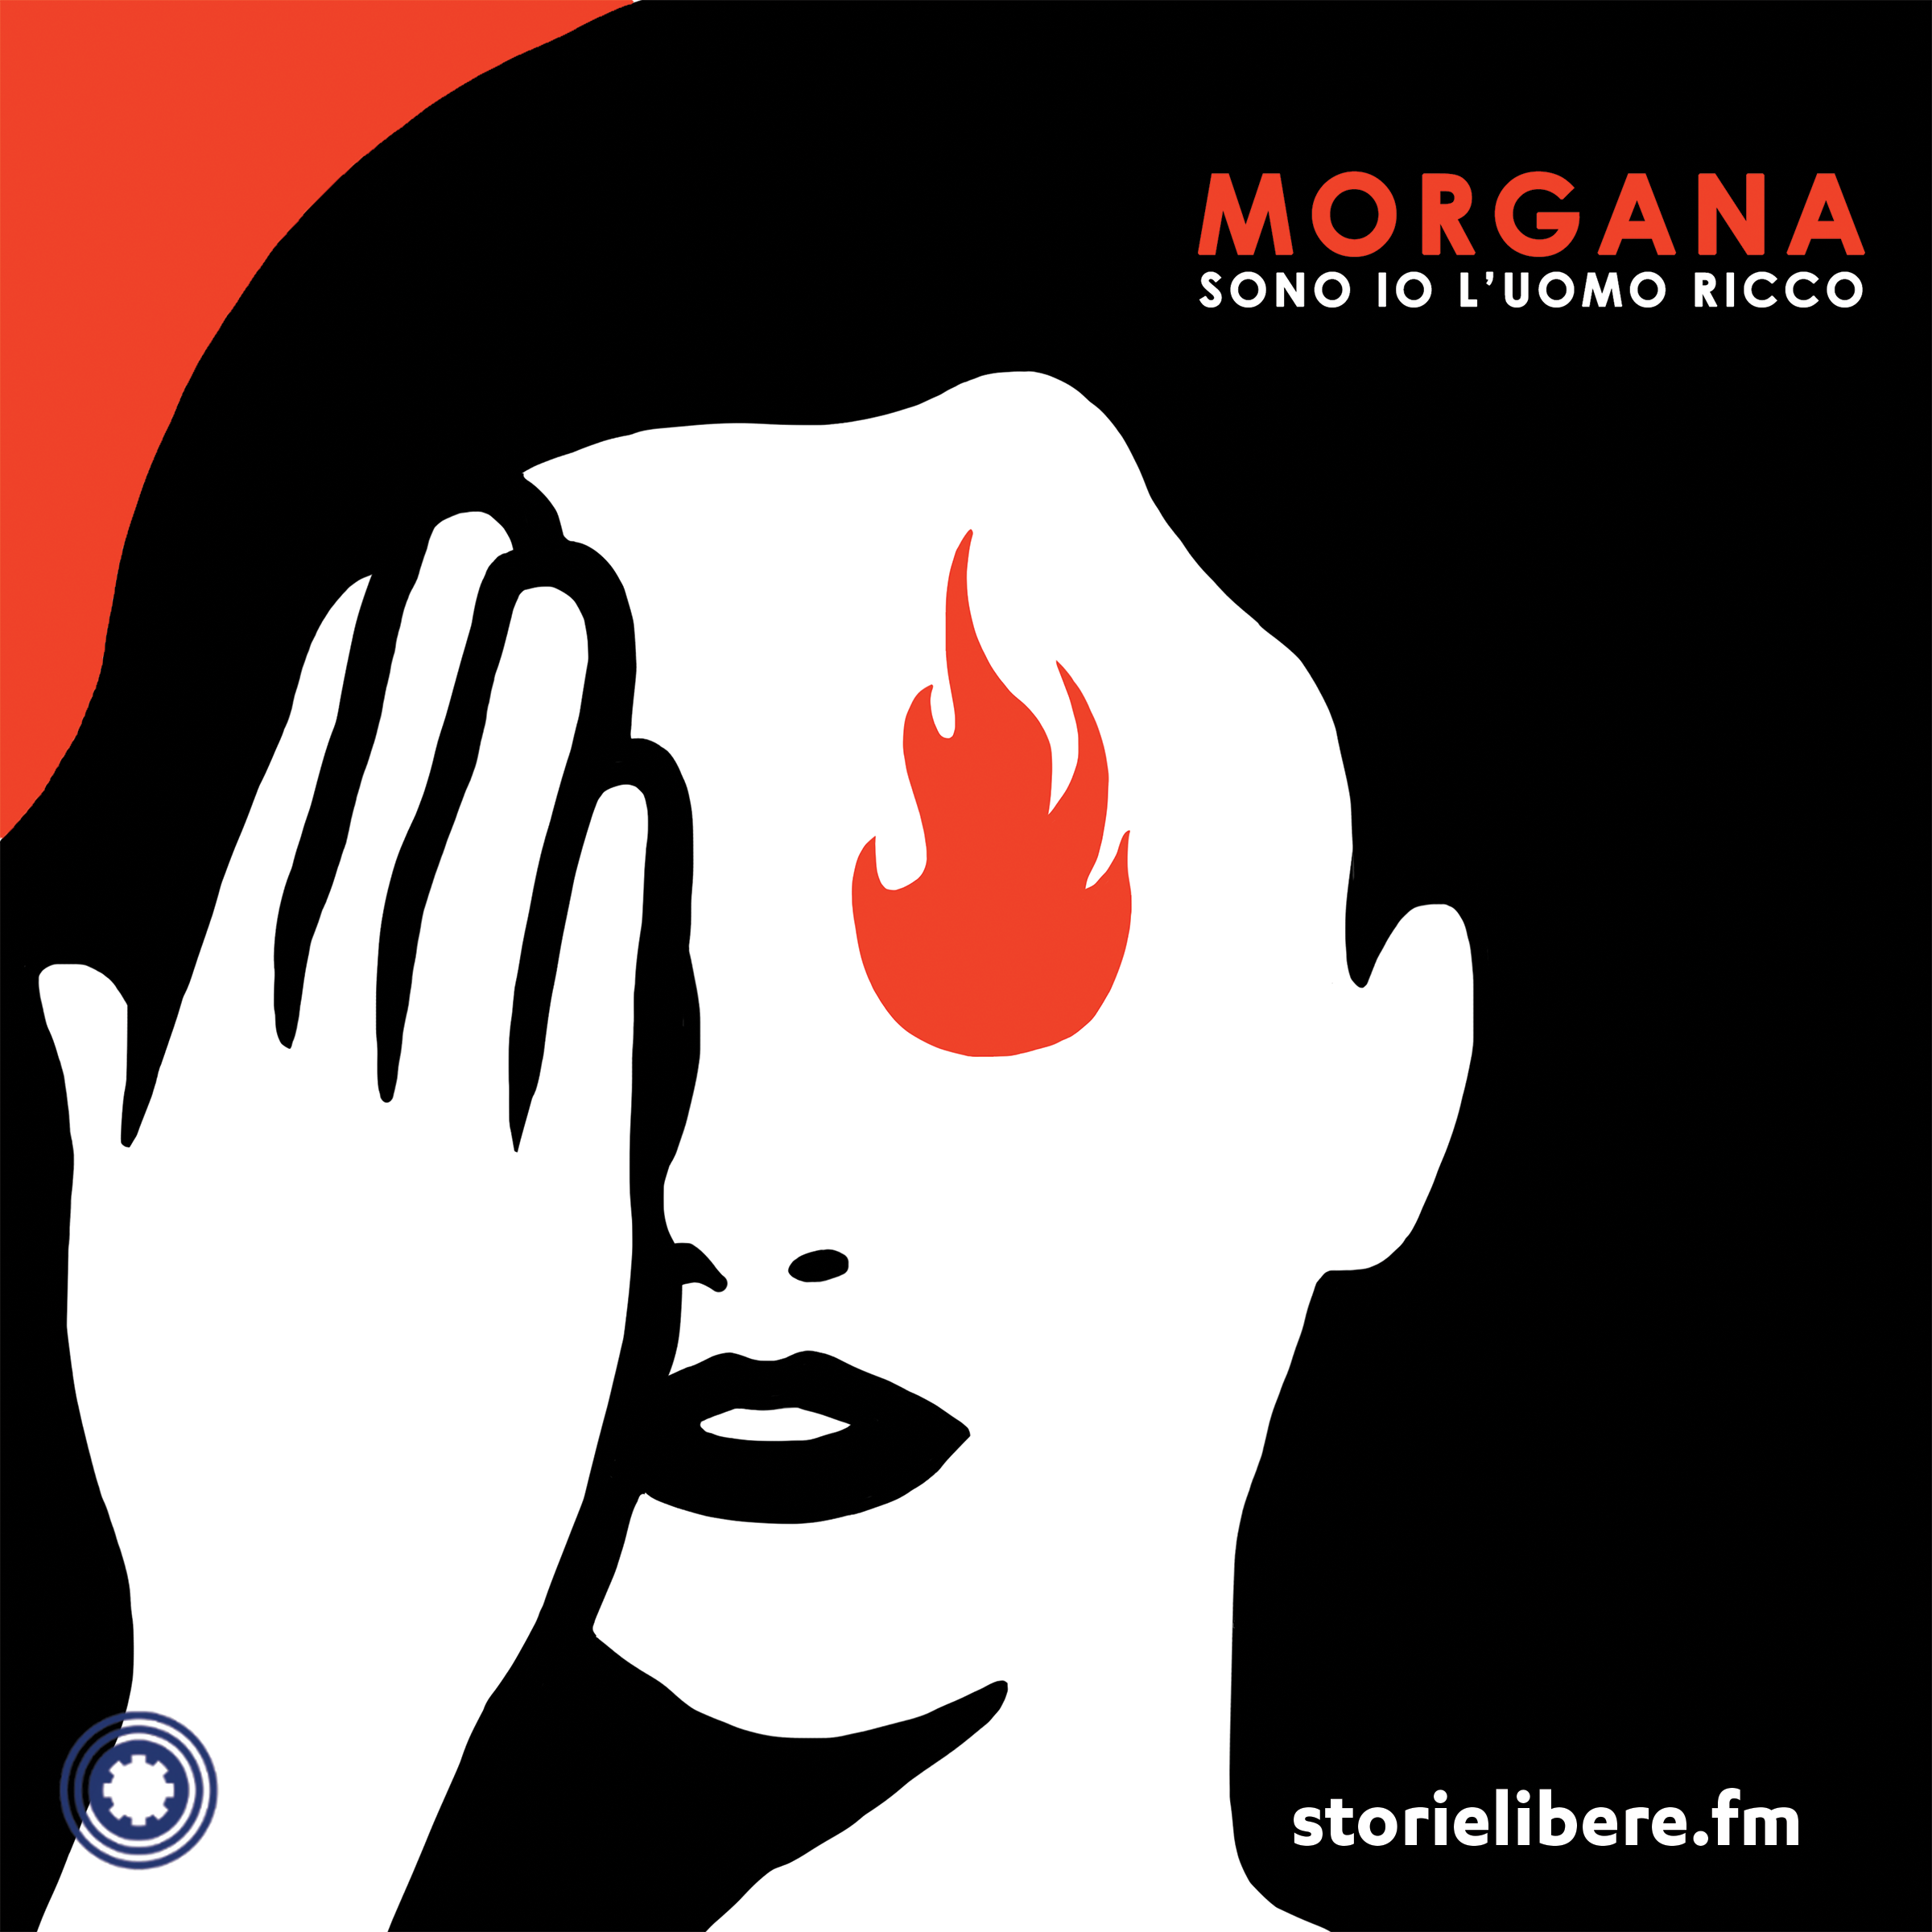 “Morgana sono anch’io” con Michela Murgia e Chiara Tagliaferri